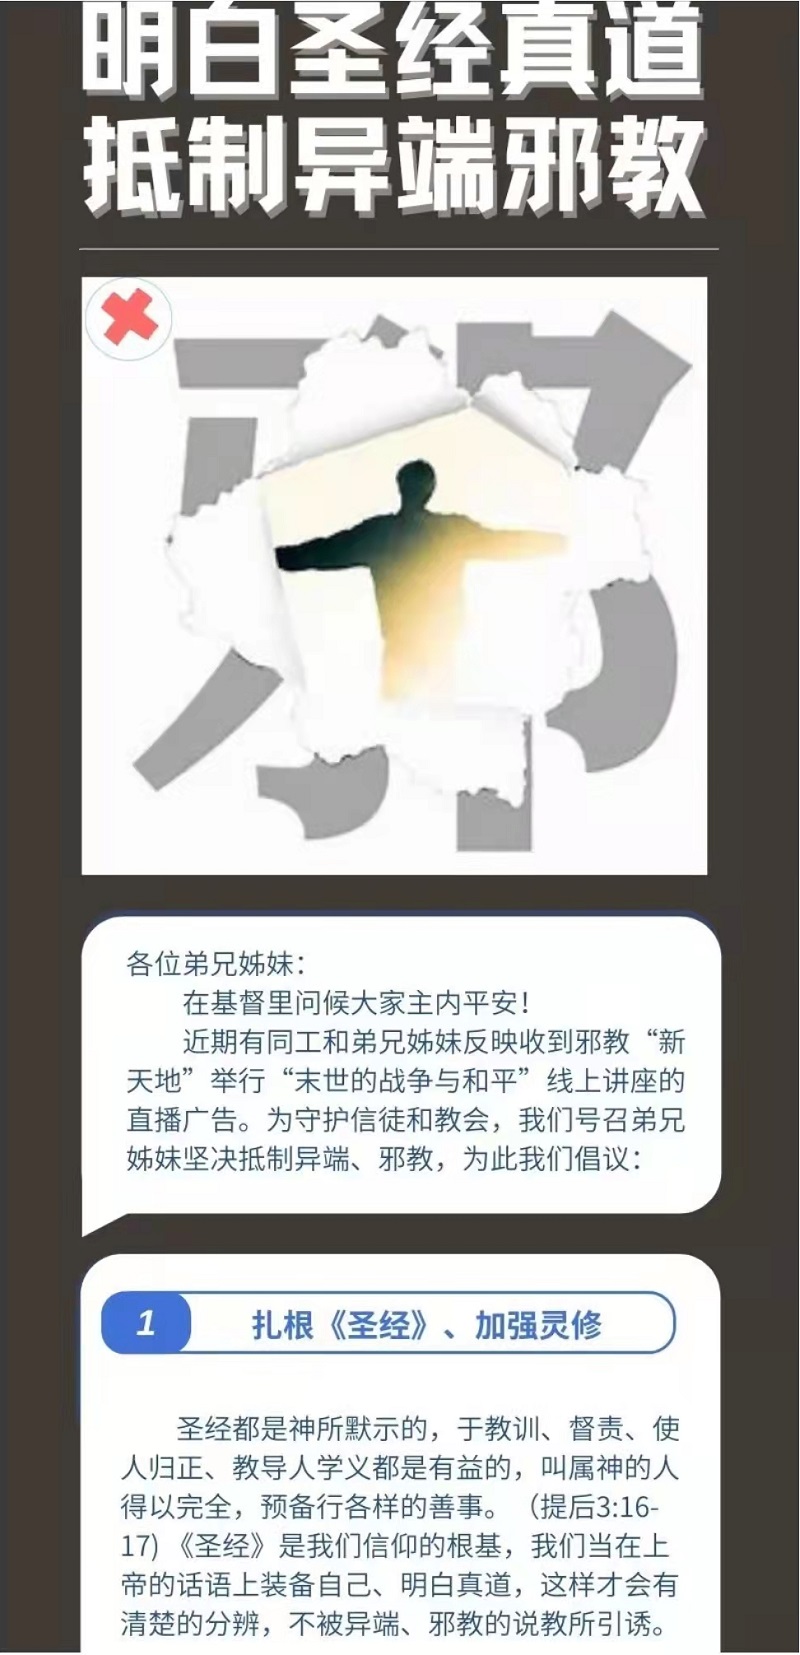 上海基督教国际礼拜堂.jpg